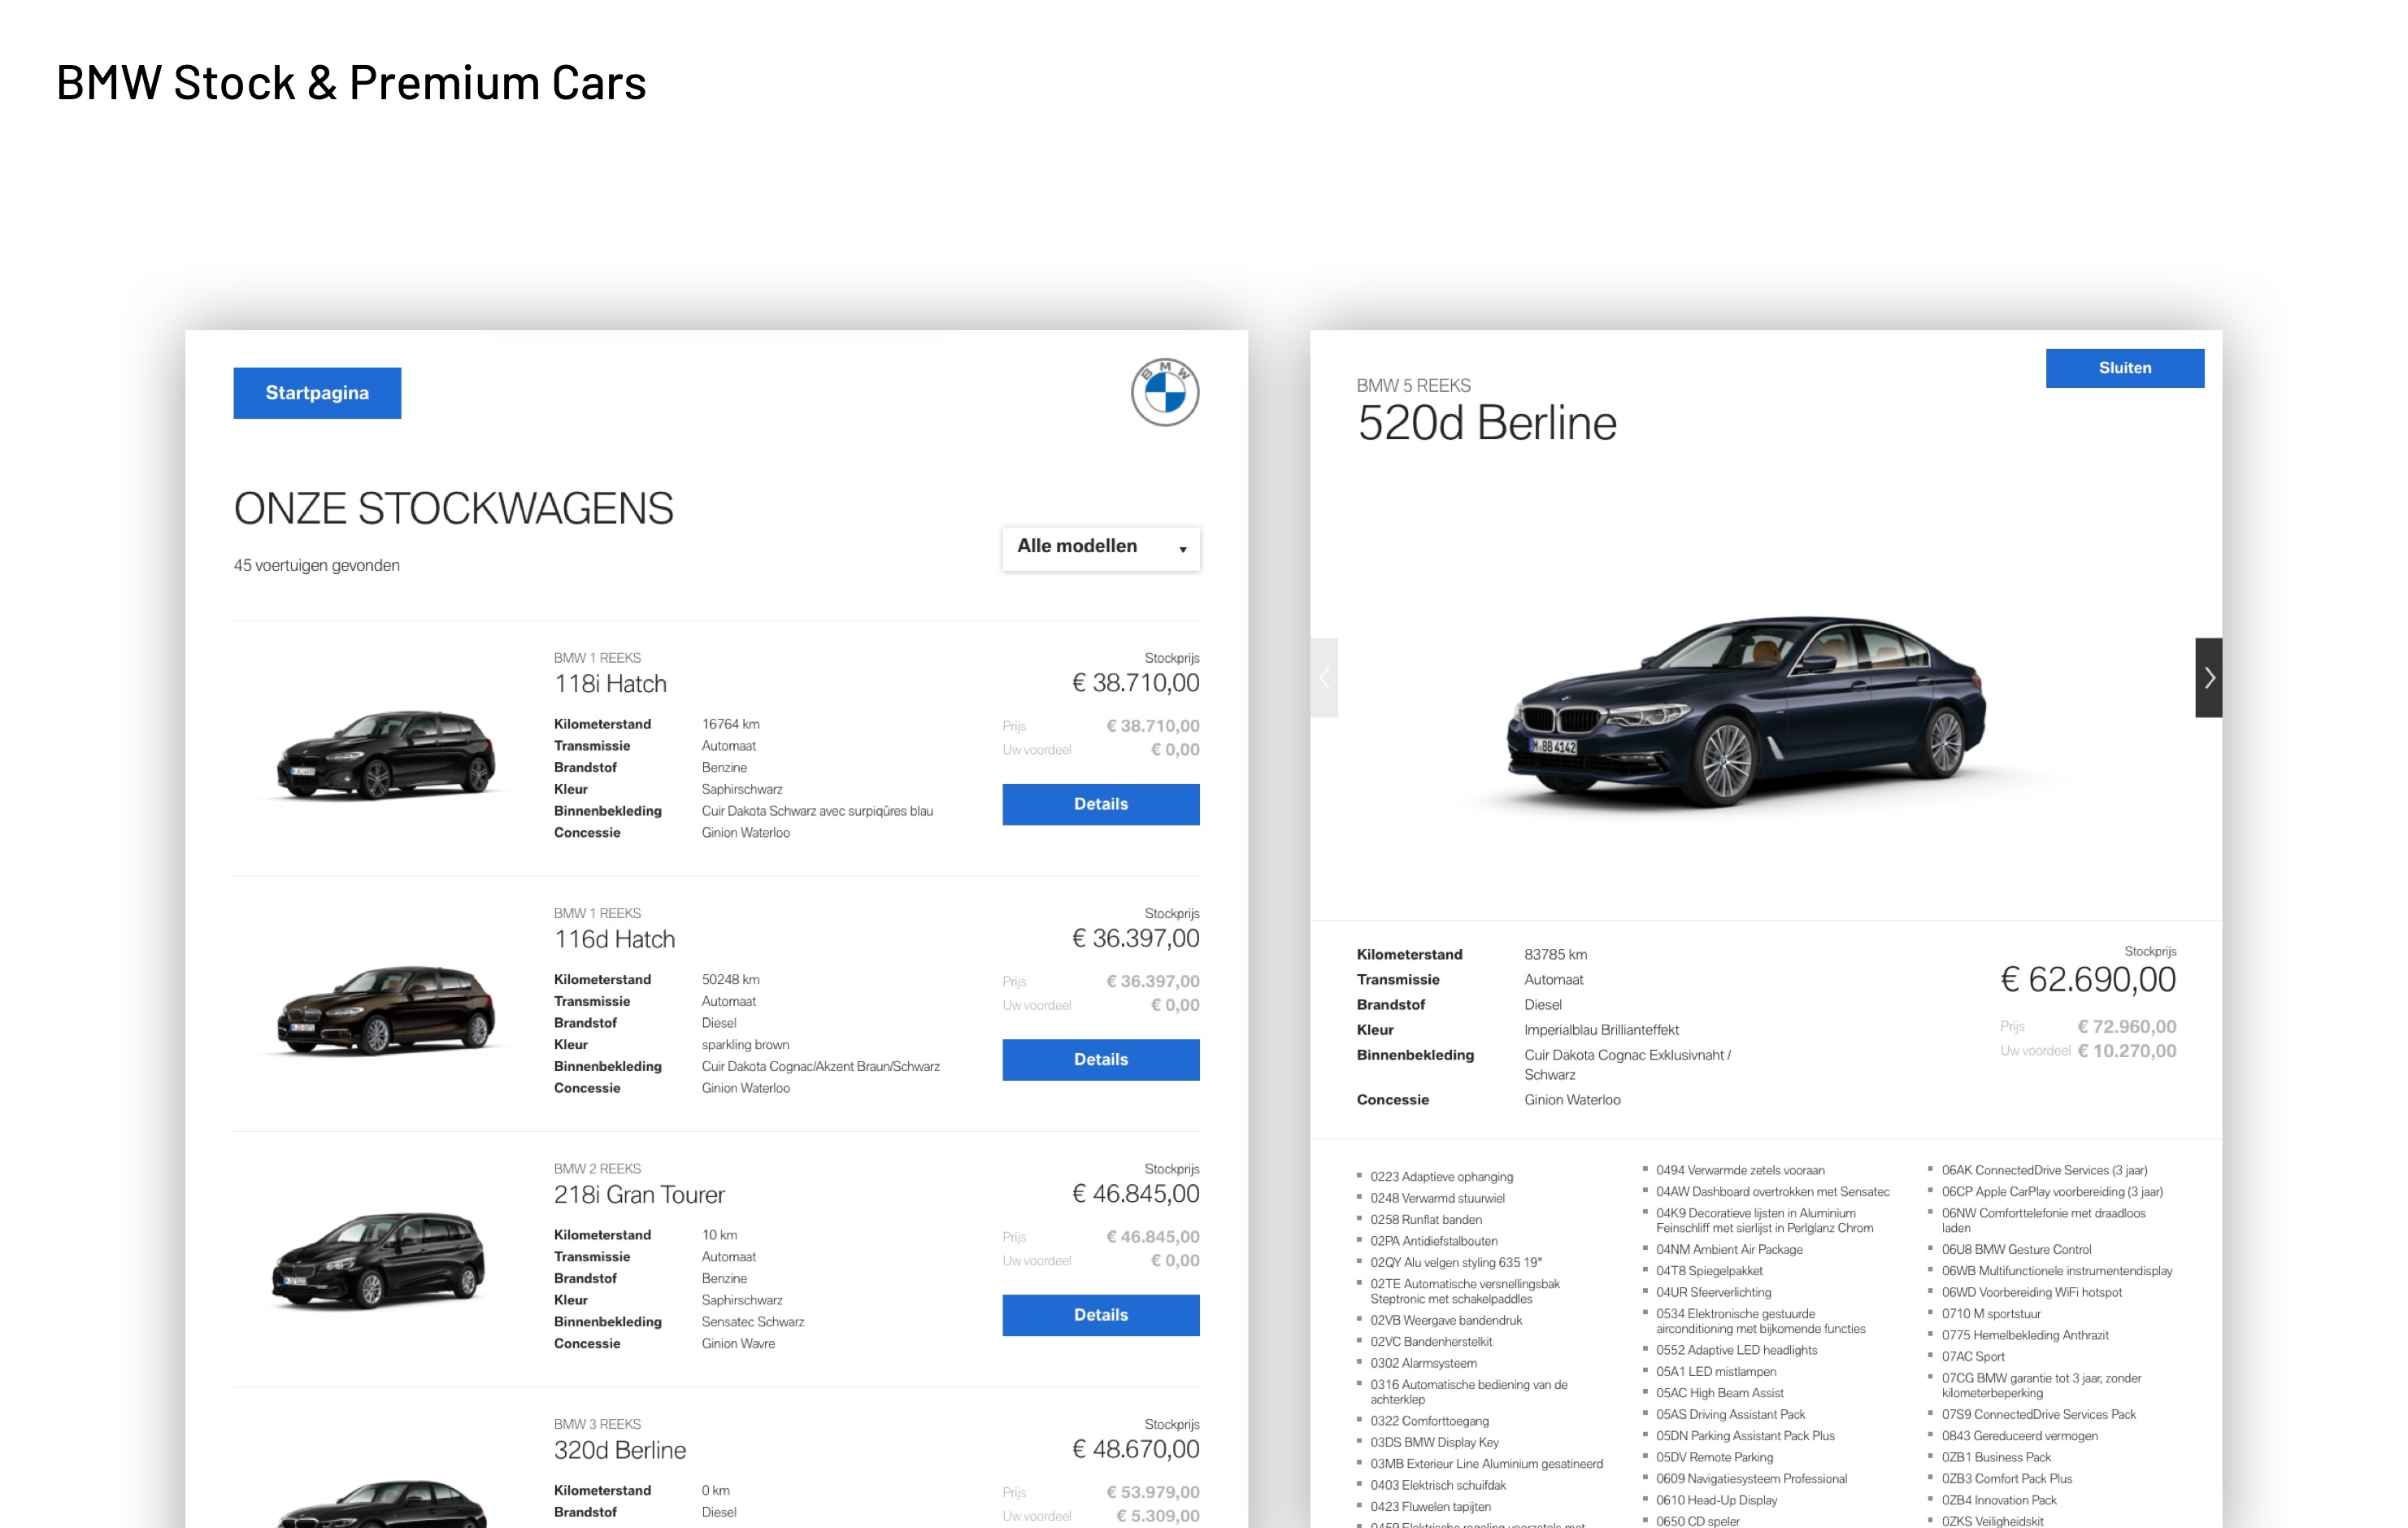 content gemaakt voor de interactieve totem waar klanten informatie op aanvragen over BMW wagens